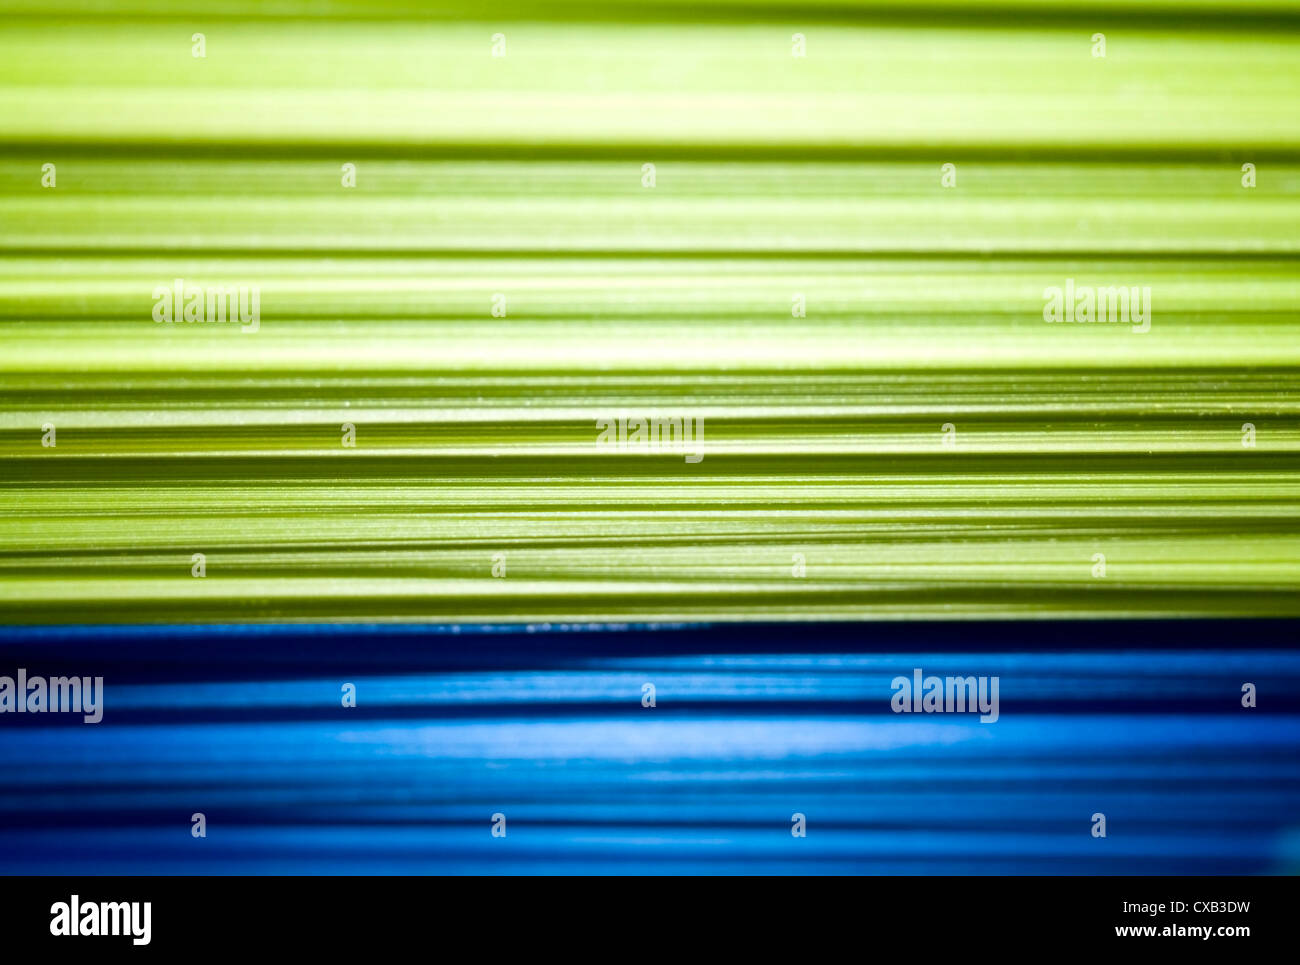 Couches en plastique vert et bleu - abstract background Banque D'Images